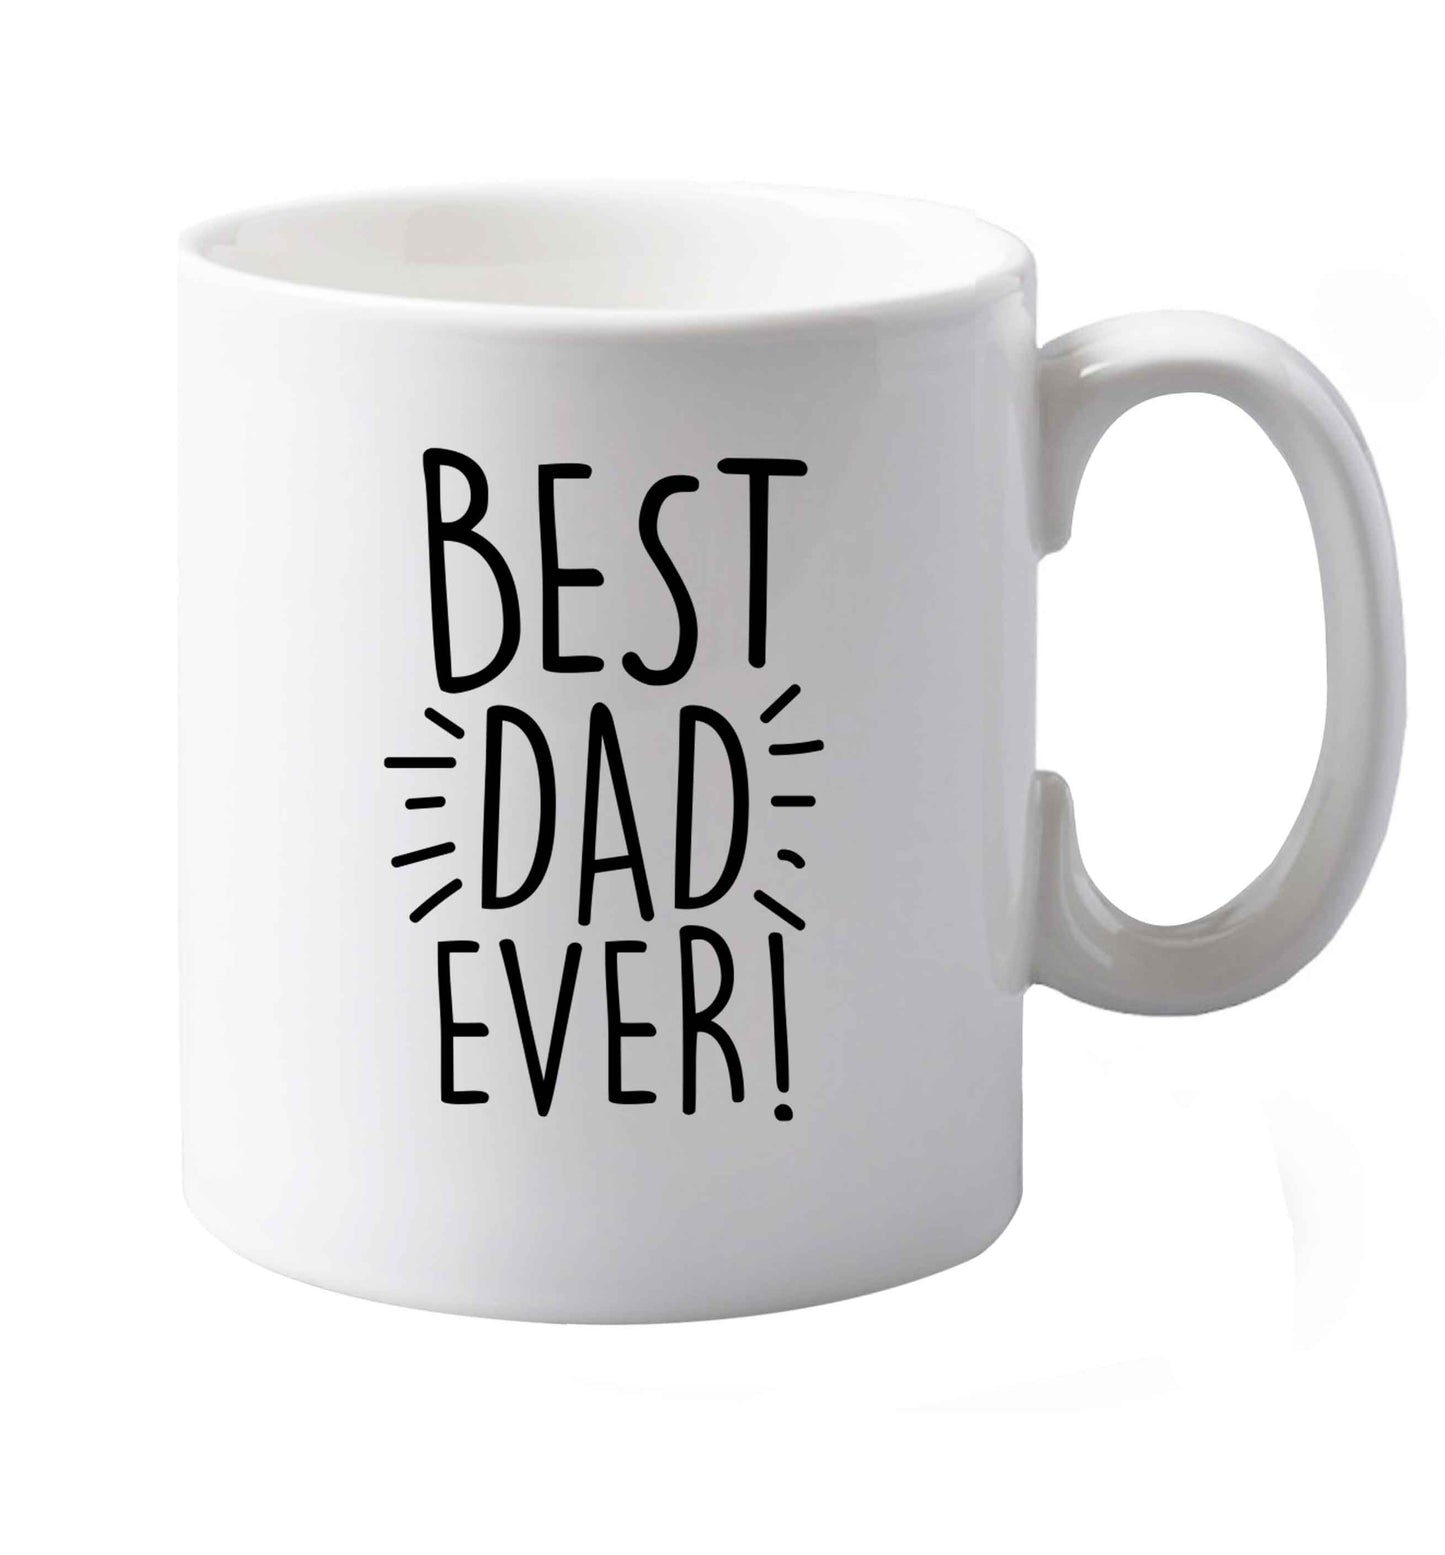 10 oz Best dad ever! ceramic mug both sides